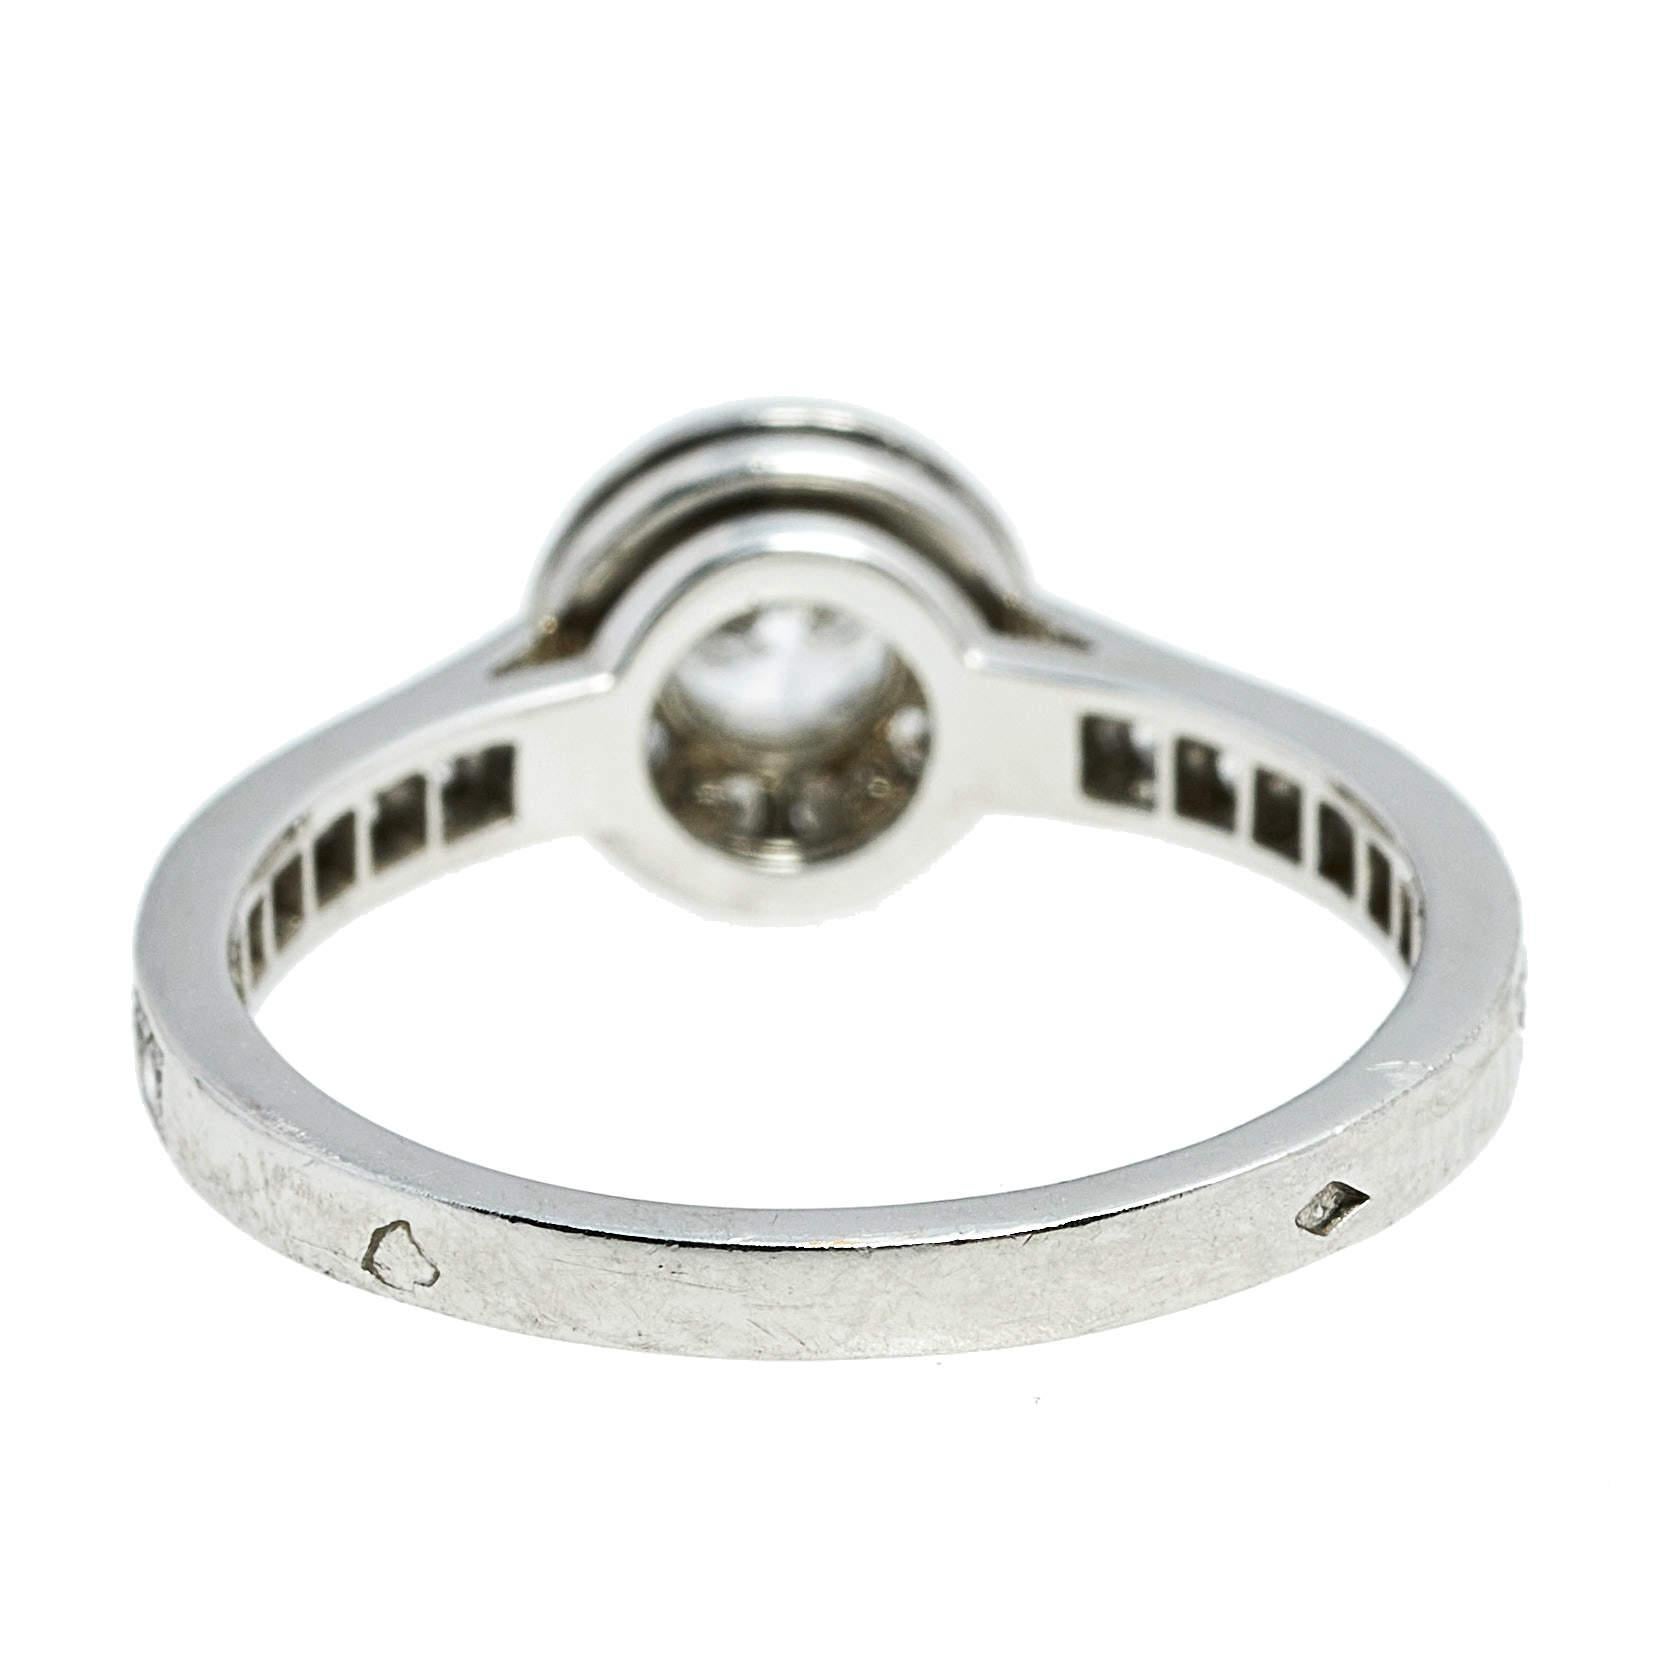 Aus der exklusiven Icone-Kollektion von Van Cleef & Arpels stammt dieser Ring, der ein wahres Spektakel ist. Auf einem schönen Platinband sitzt ein großer Brillant, der von kleineren runden Brillanten in Pavé-Fassung umgeben ist, die sich über die